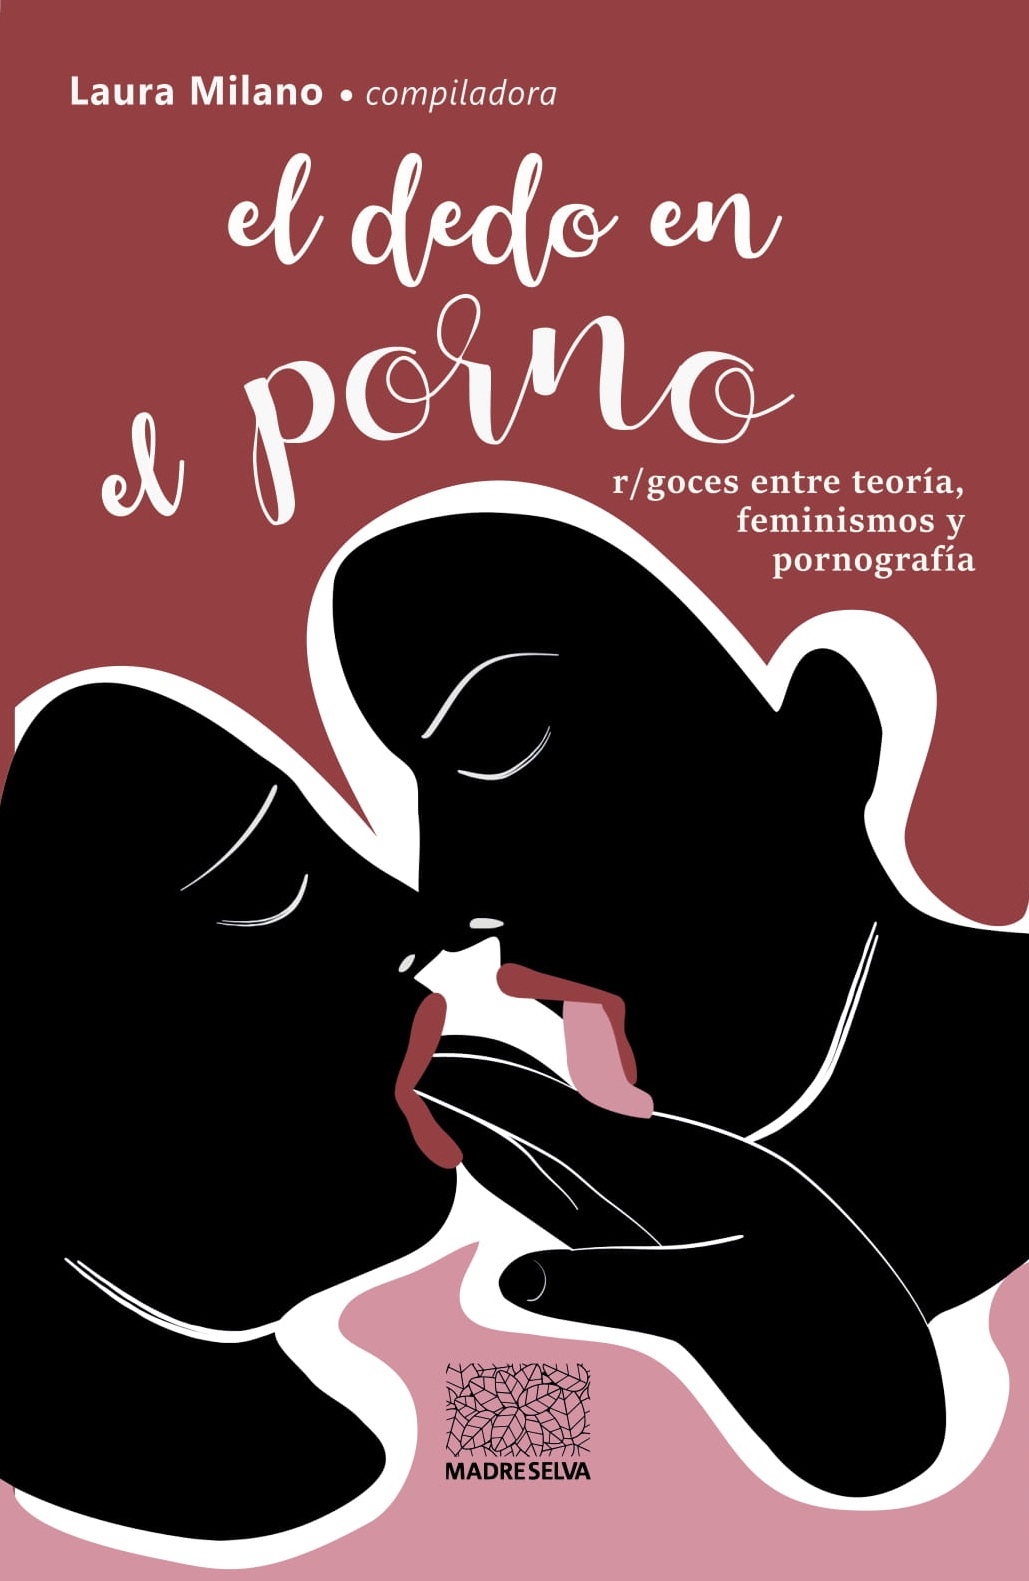 EL DEDO EN EL PORNO - Laura Milano (comp.)